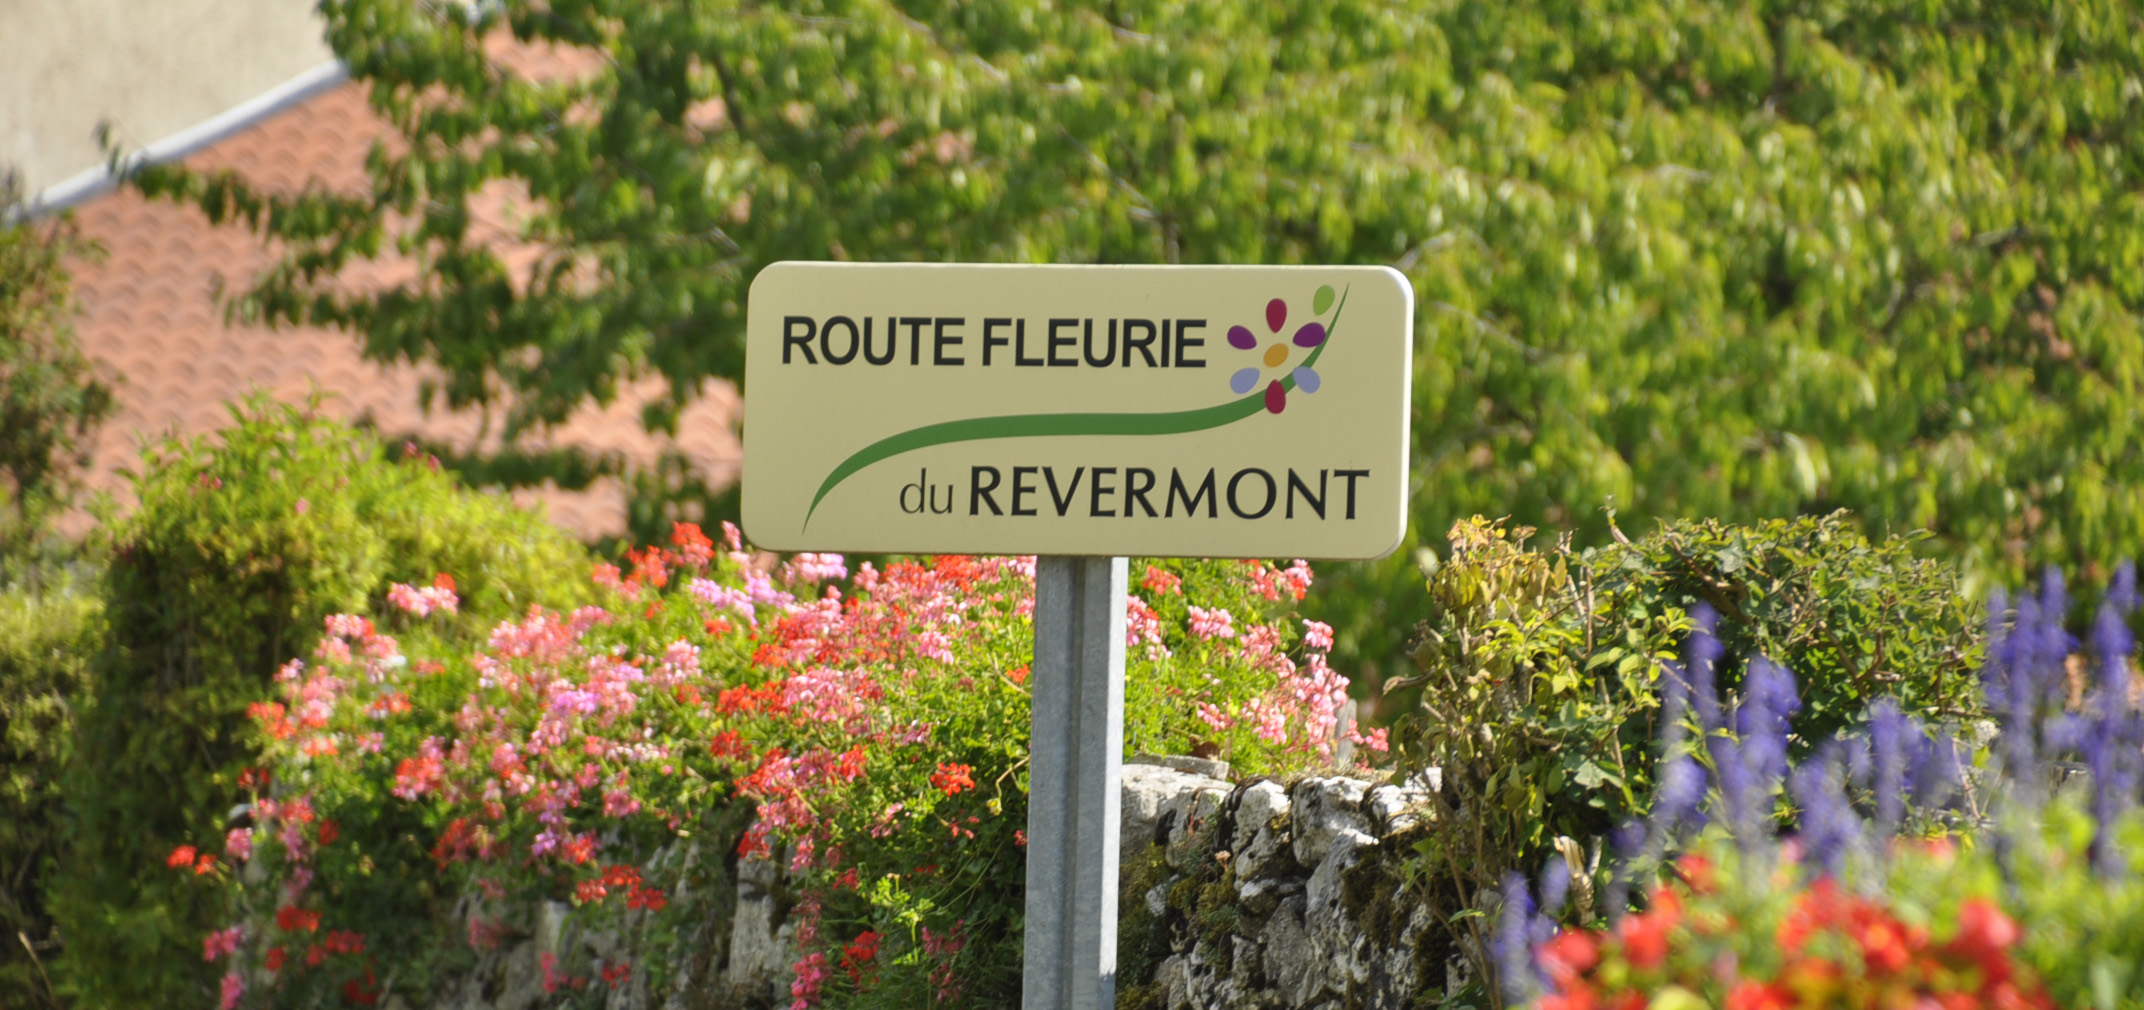 Route fleurie revermont_panneau